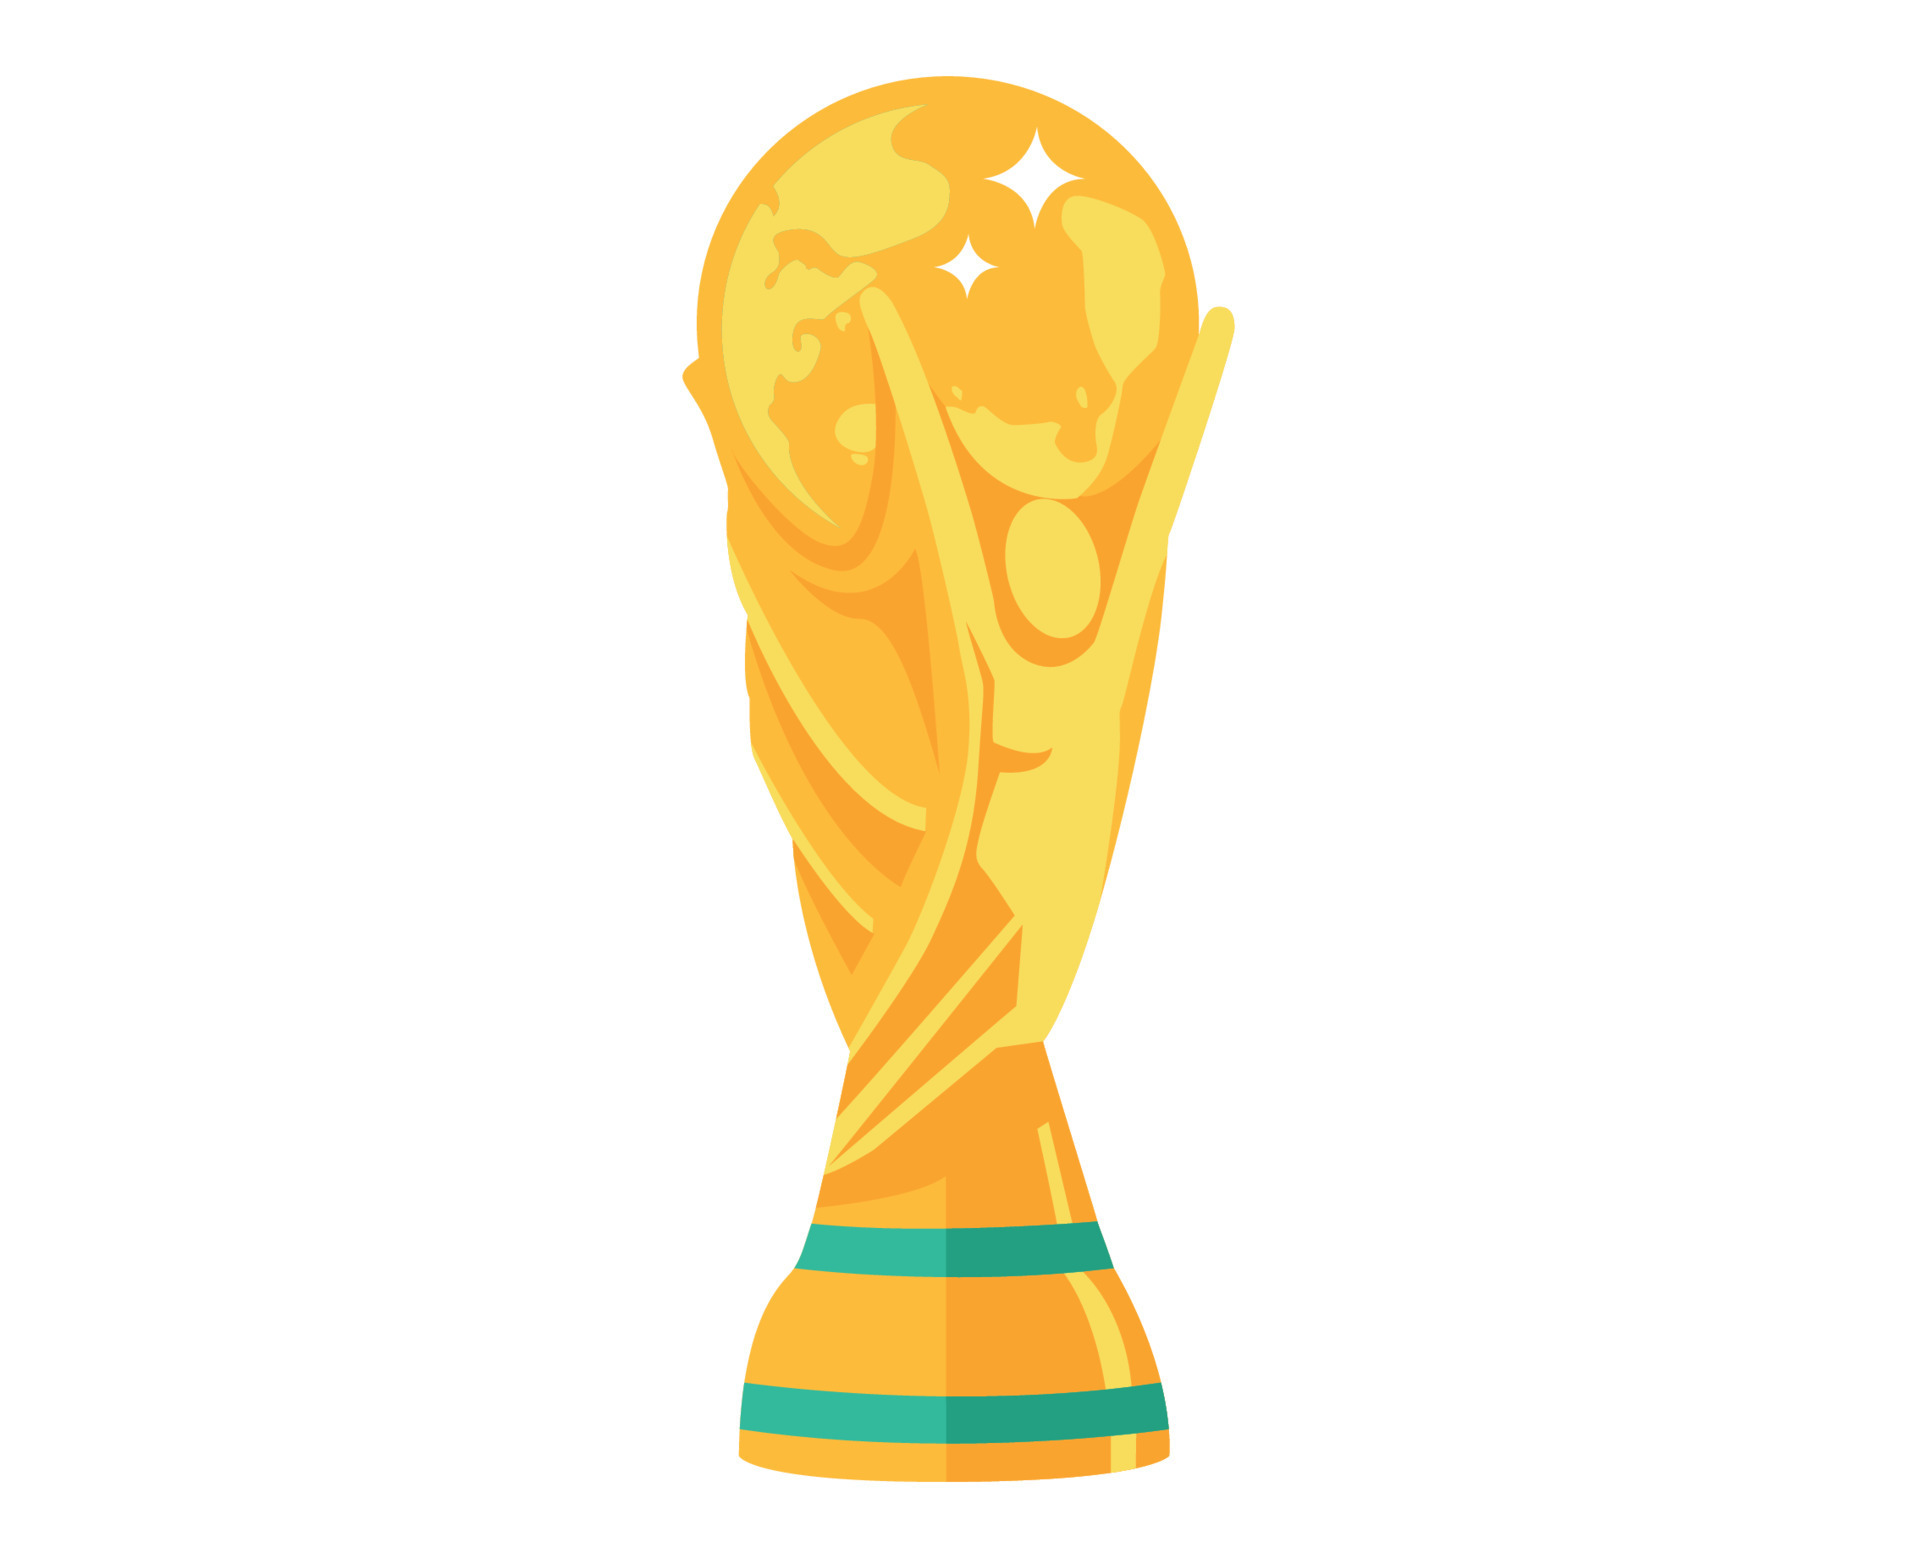 Copa Mundial Vectores, Iconos, Gráficos y Fondos para Descargar Gratis